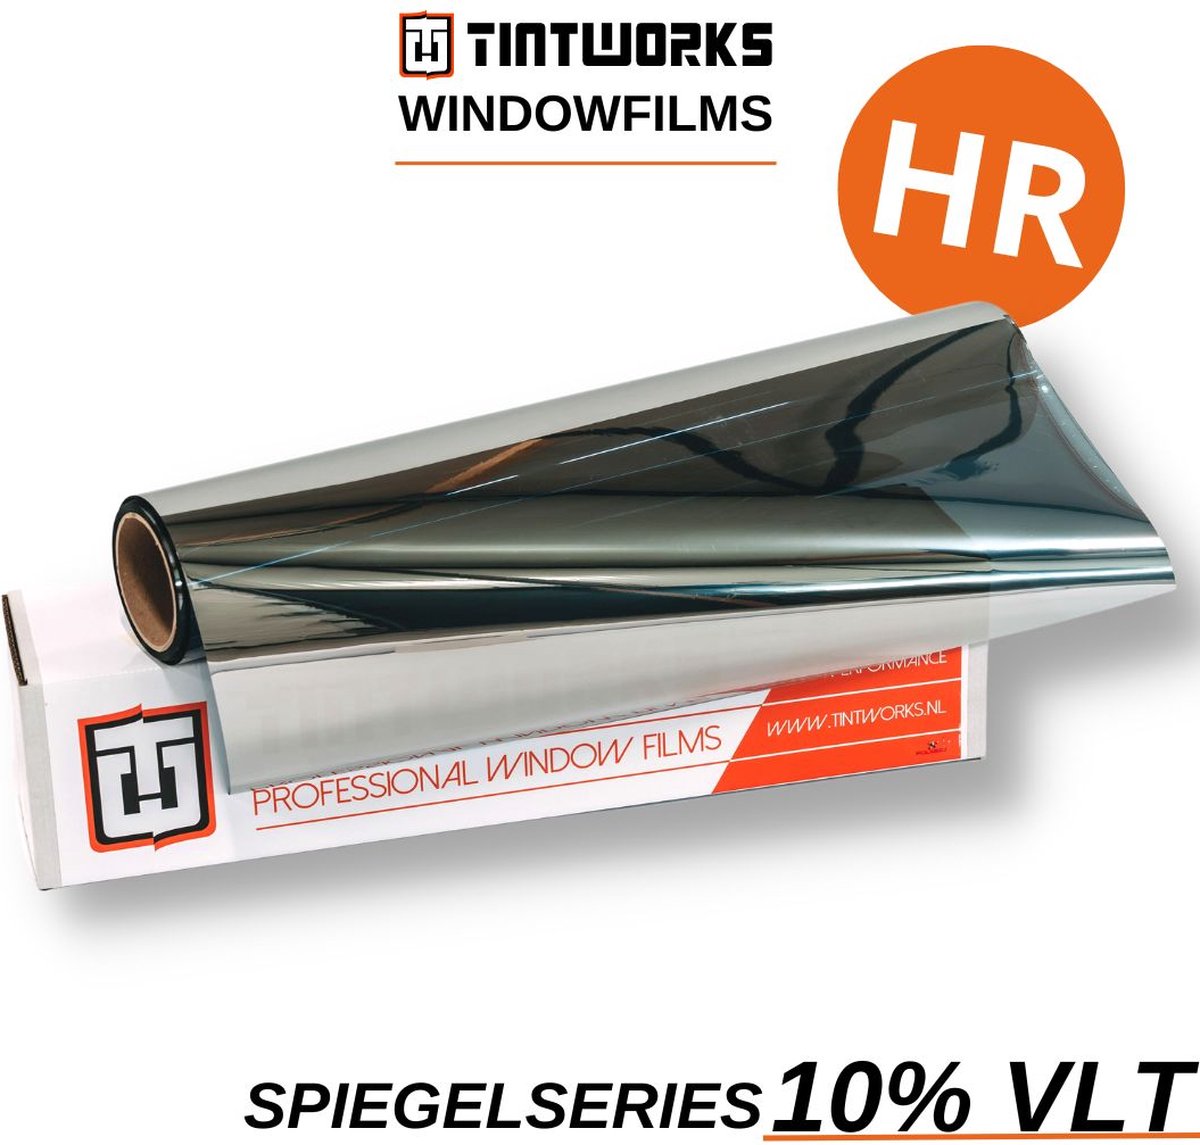 Tintworks Raamfolie spiegeleffect - spiegelfolie - anti inkijk 10% VLT - HR(+++) Glas - 300cm x 61cm - Zonwerend & isolerend - Professionele A-kwaliteit